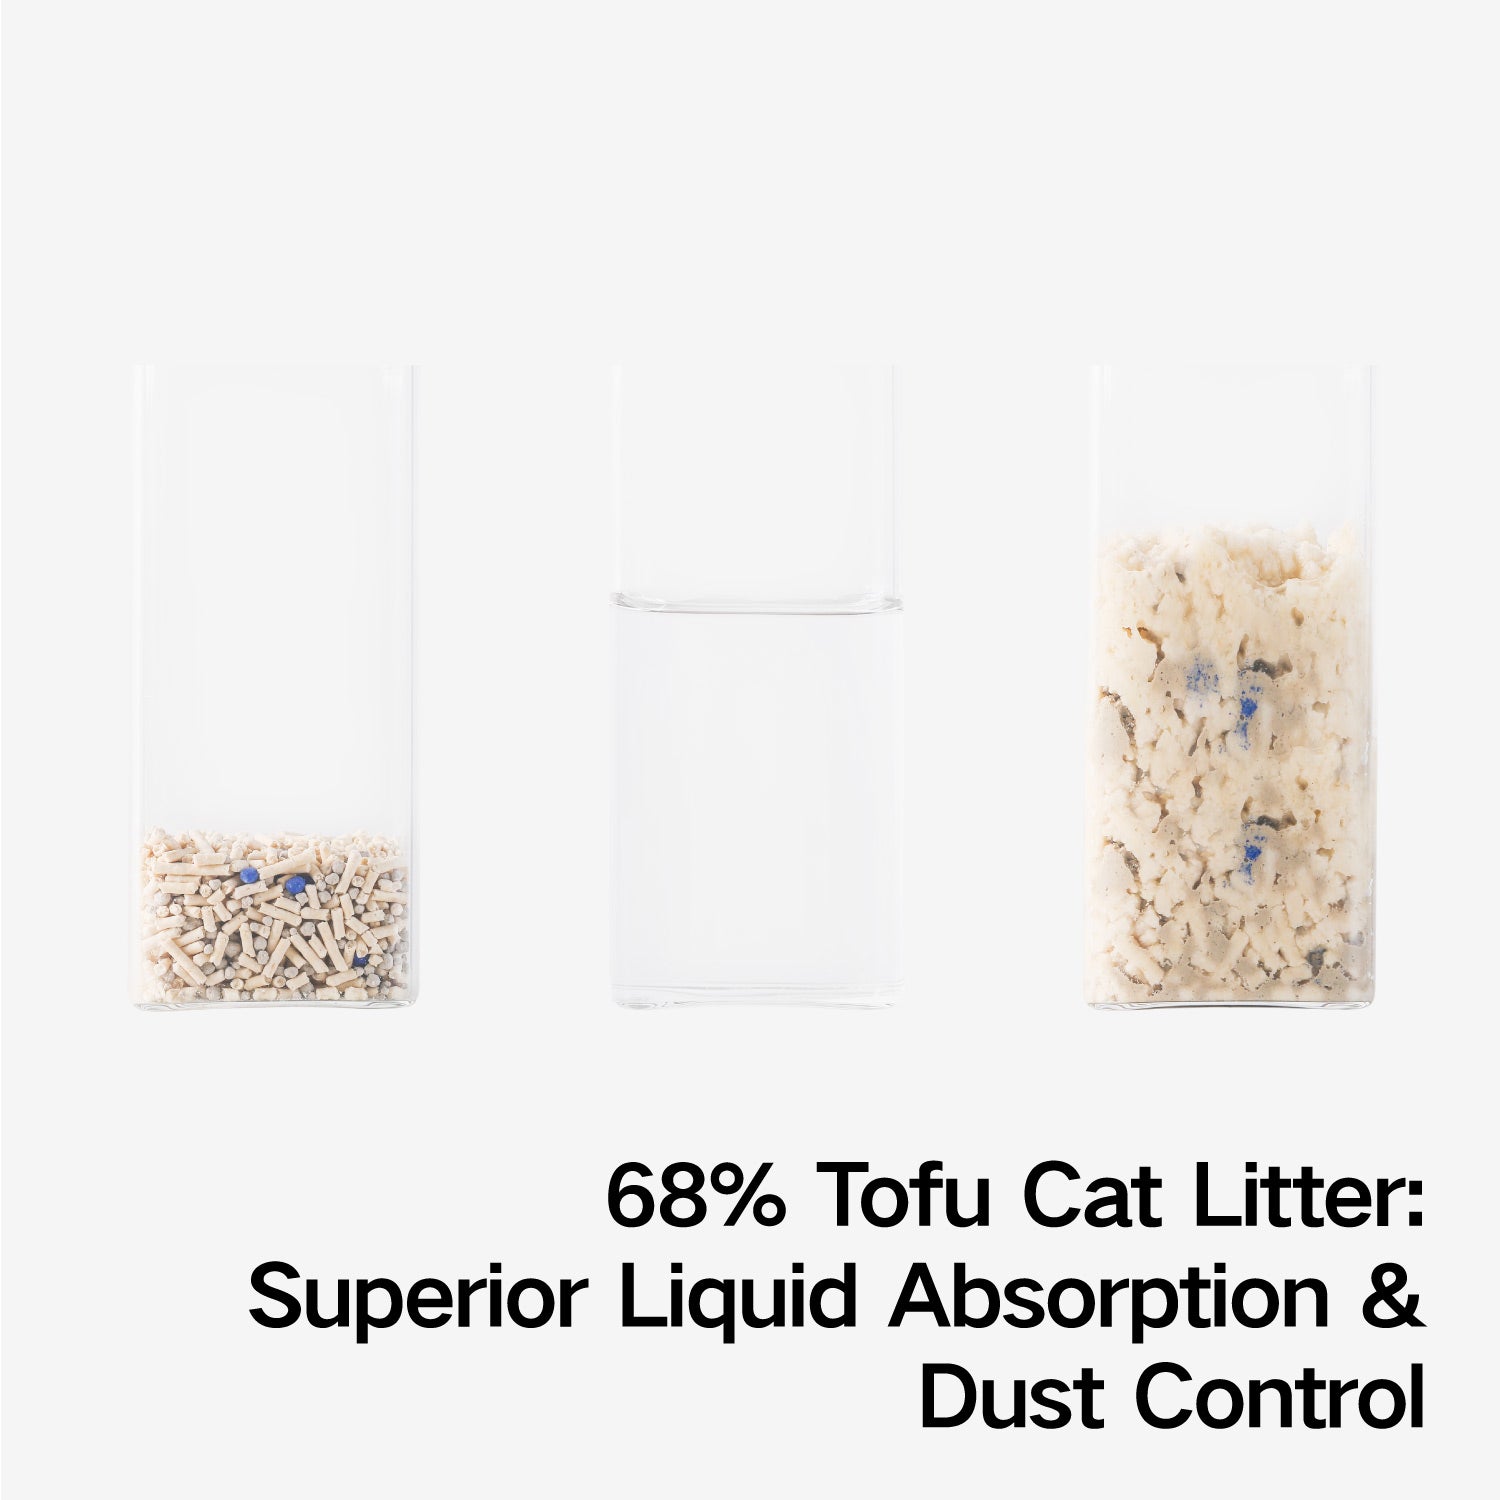 pidan Oragnic Tofu Cat Litter, 5.29-lb Bag